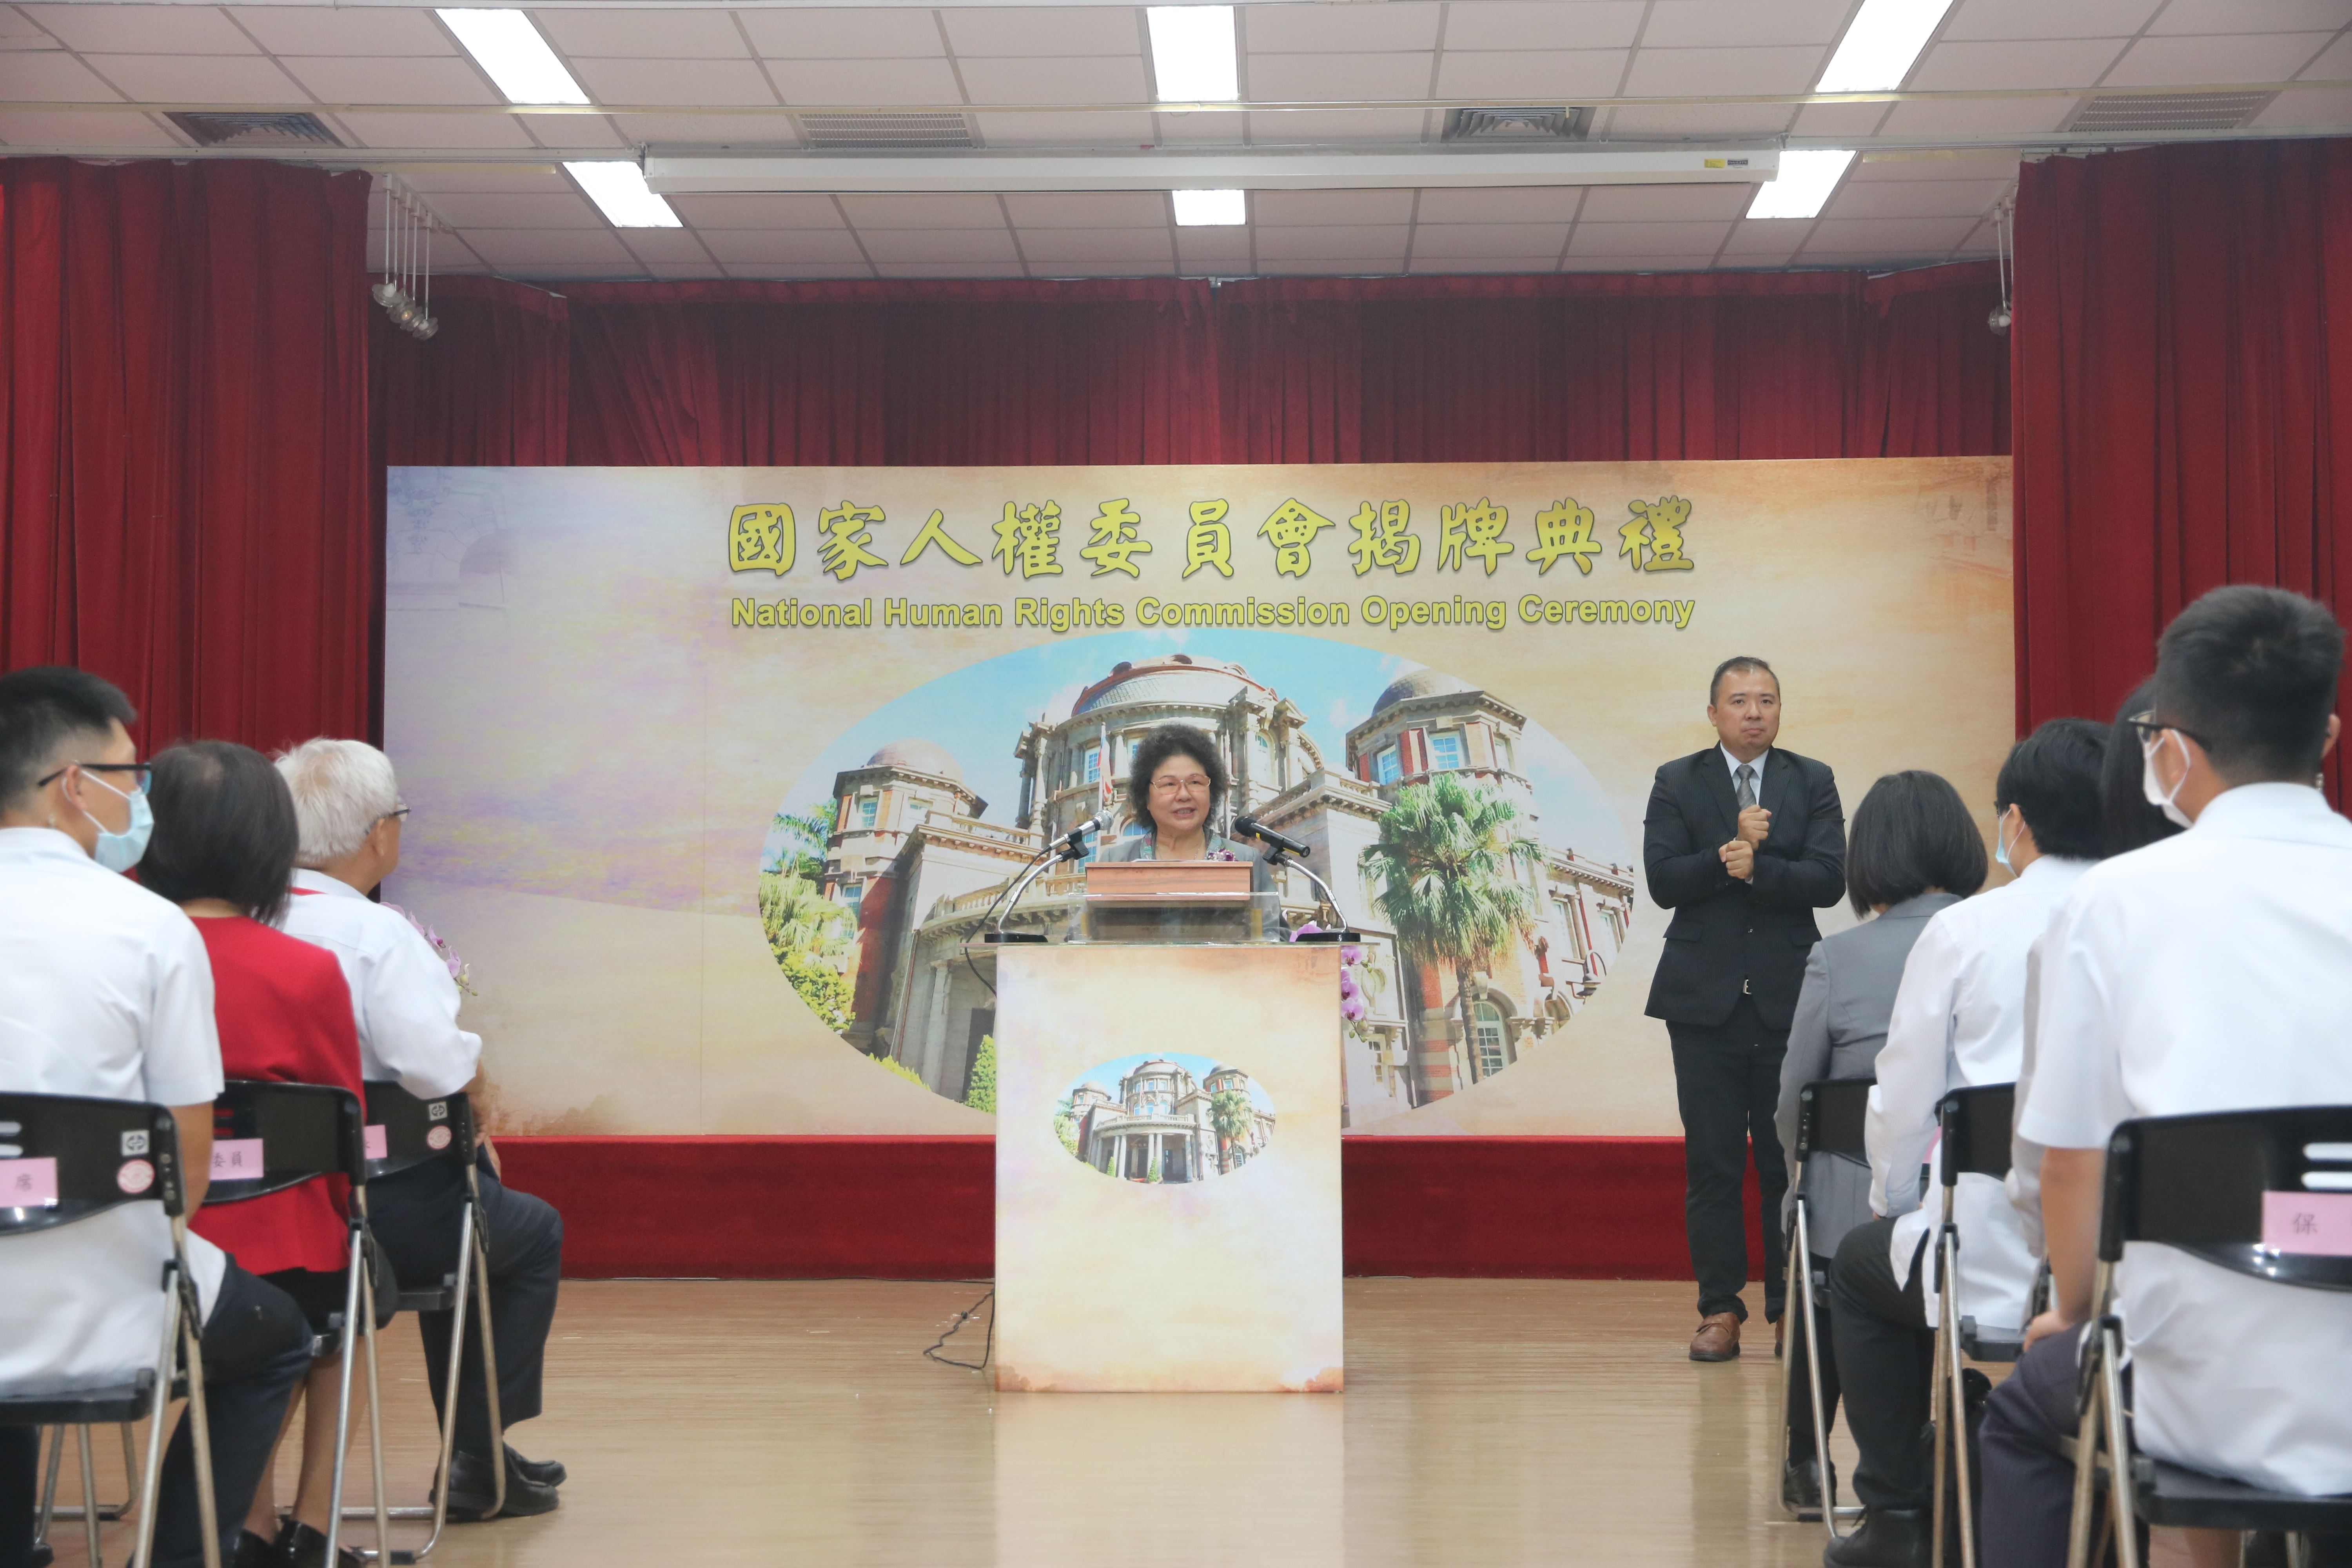 2020年8月1日首任主任委員陳菊於國家人權委員會揭牌典禮致詞